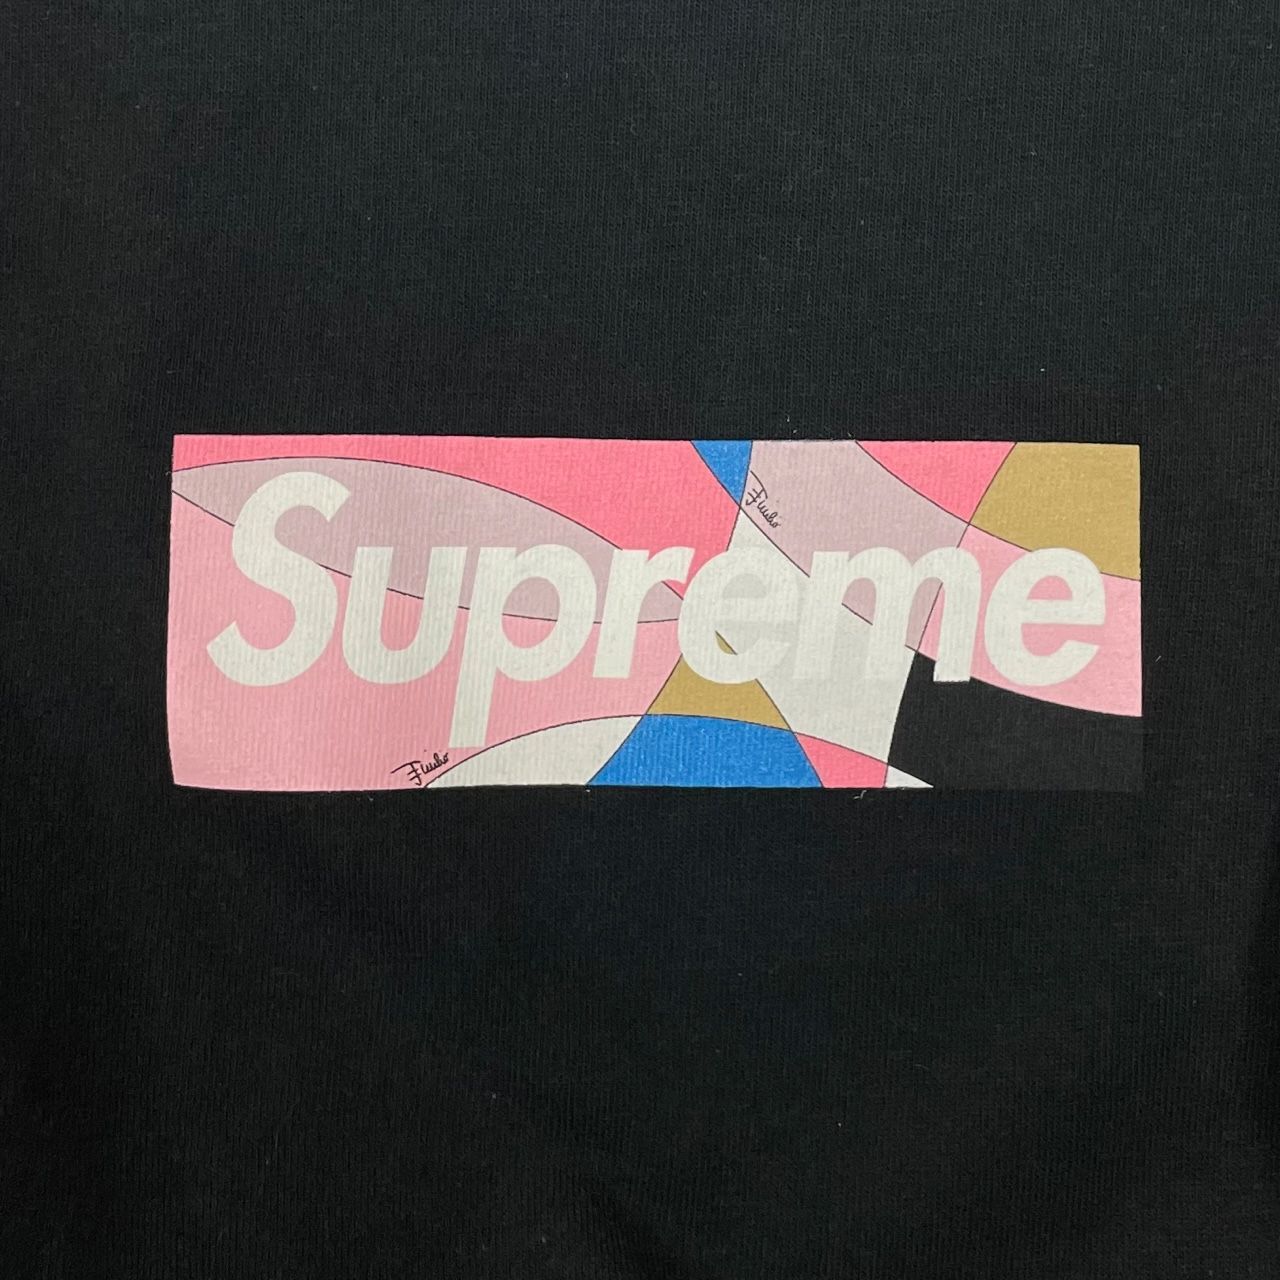 新品 L Supreme Box Logo エミリオプッチ ボックスロゴ ピンク